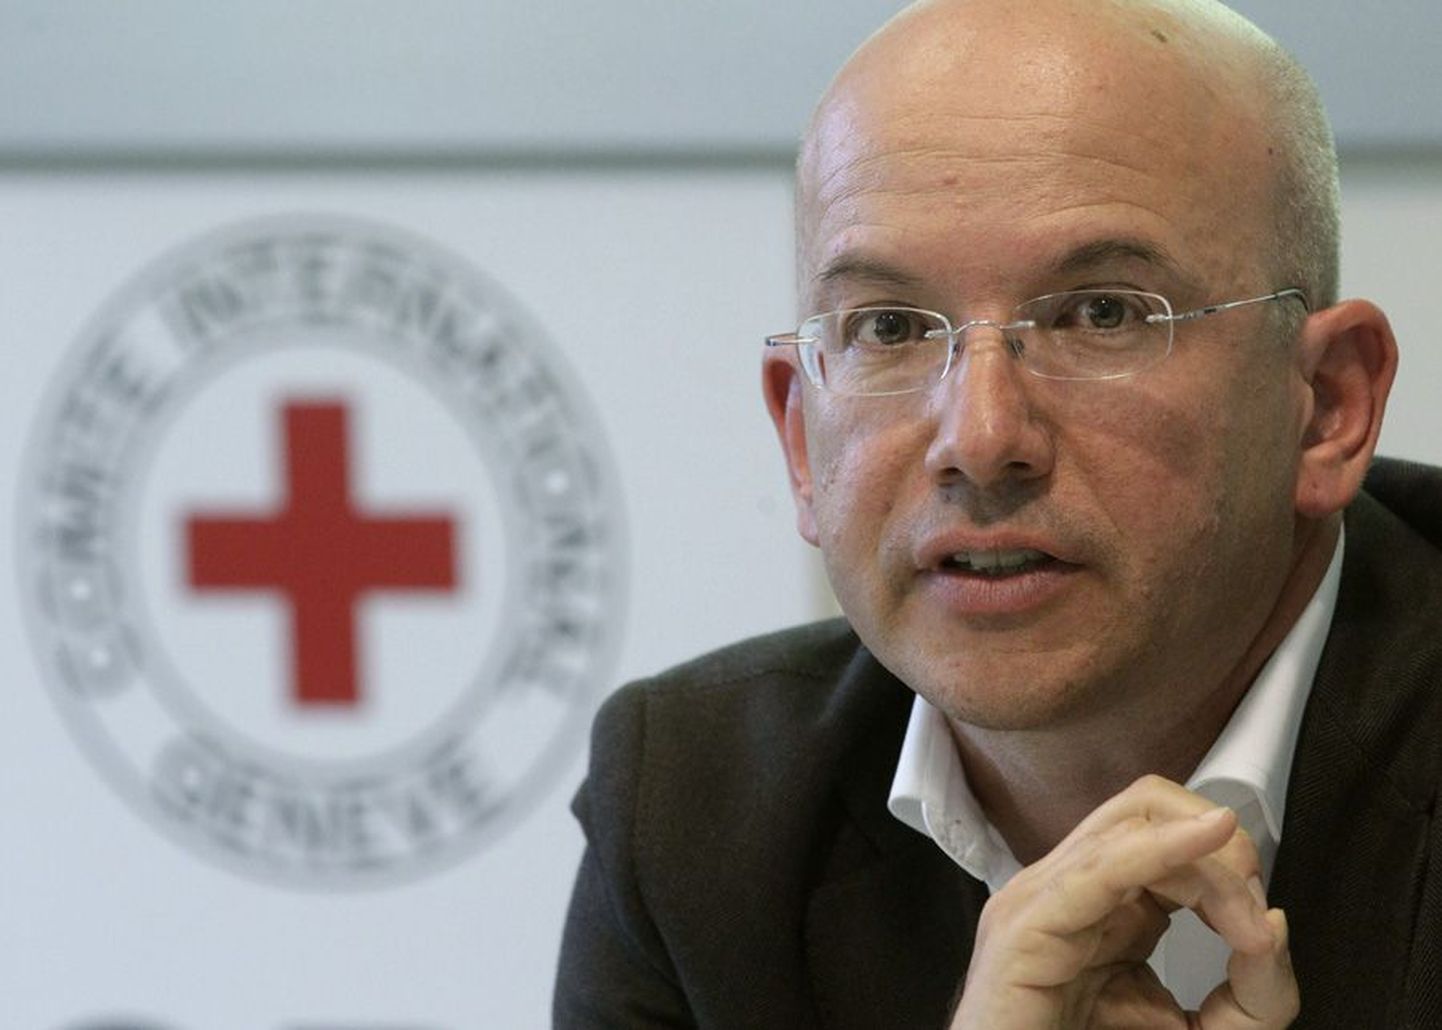 Rahvusvahelise Punase Risti komitee peadirektor Yves Daccord hoiatab Euroopat raskete aastate eest ning soovitab rahvuslikel Punase Risti seltsidel keskenduda oma riikide vaeste ja puudusekannatajate abistamisele.